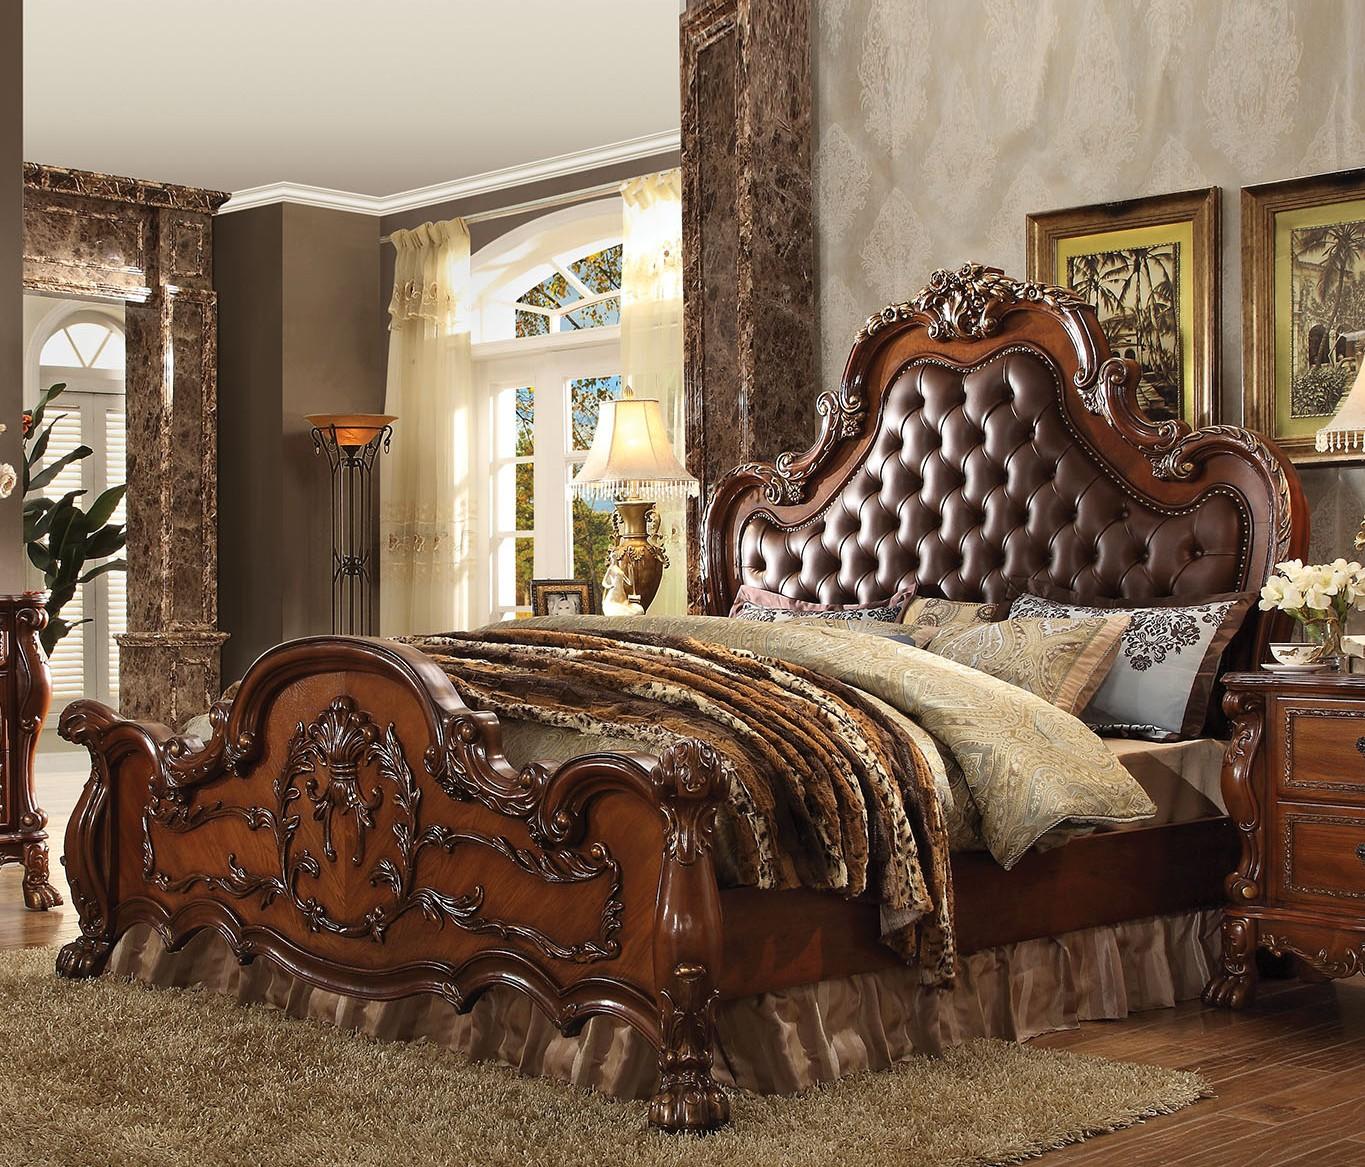 

    
Tufted Cherry Oak Queen Bedroom Set 3Pcs Dresden 23140Q Acme Victorian Classic
